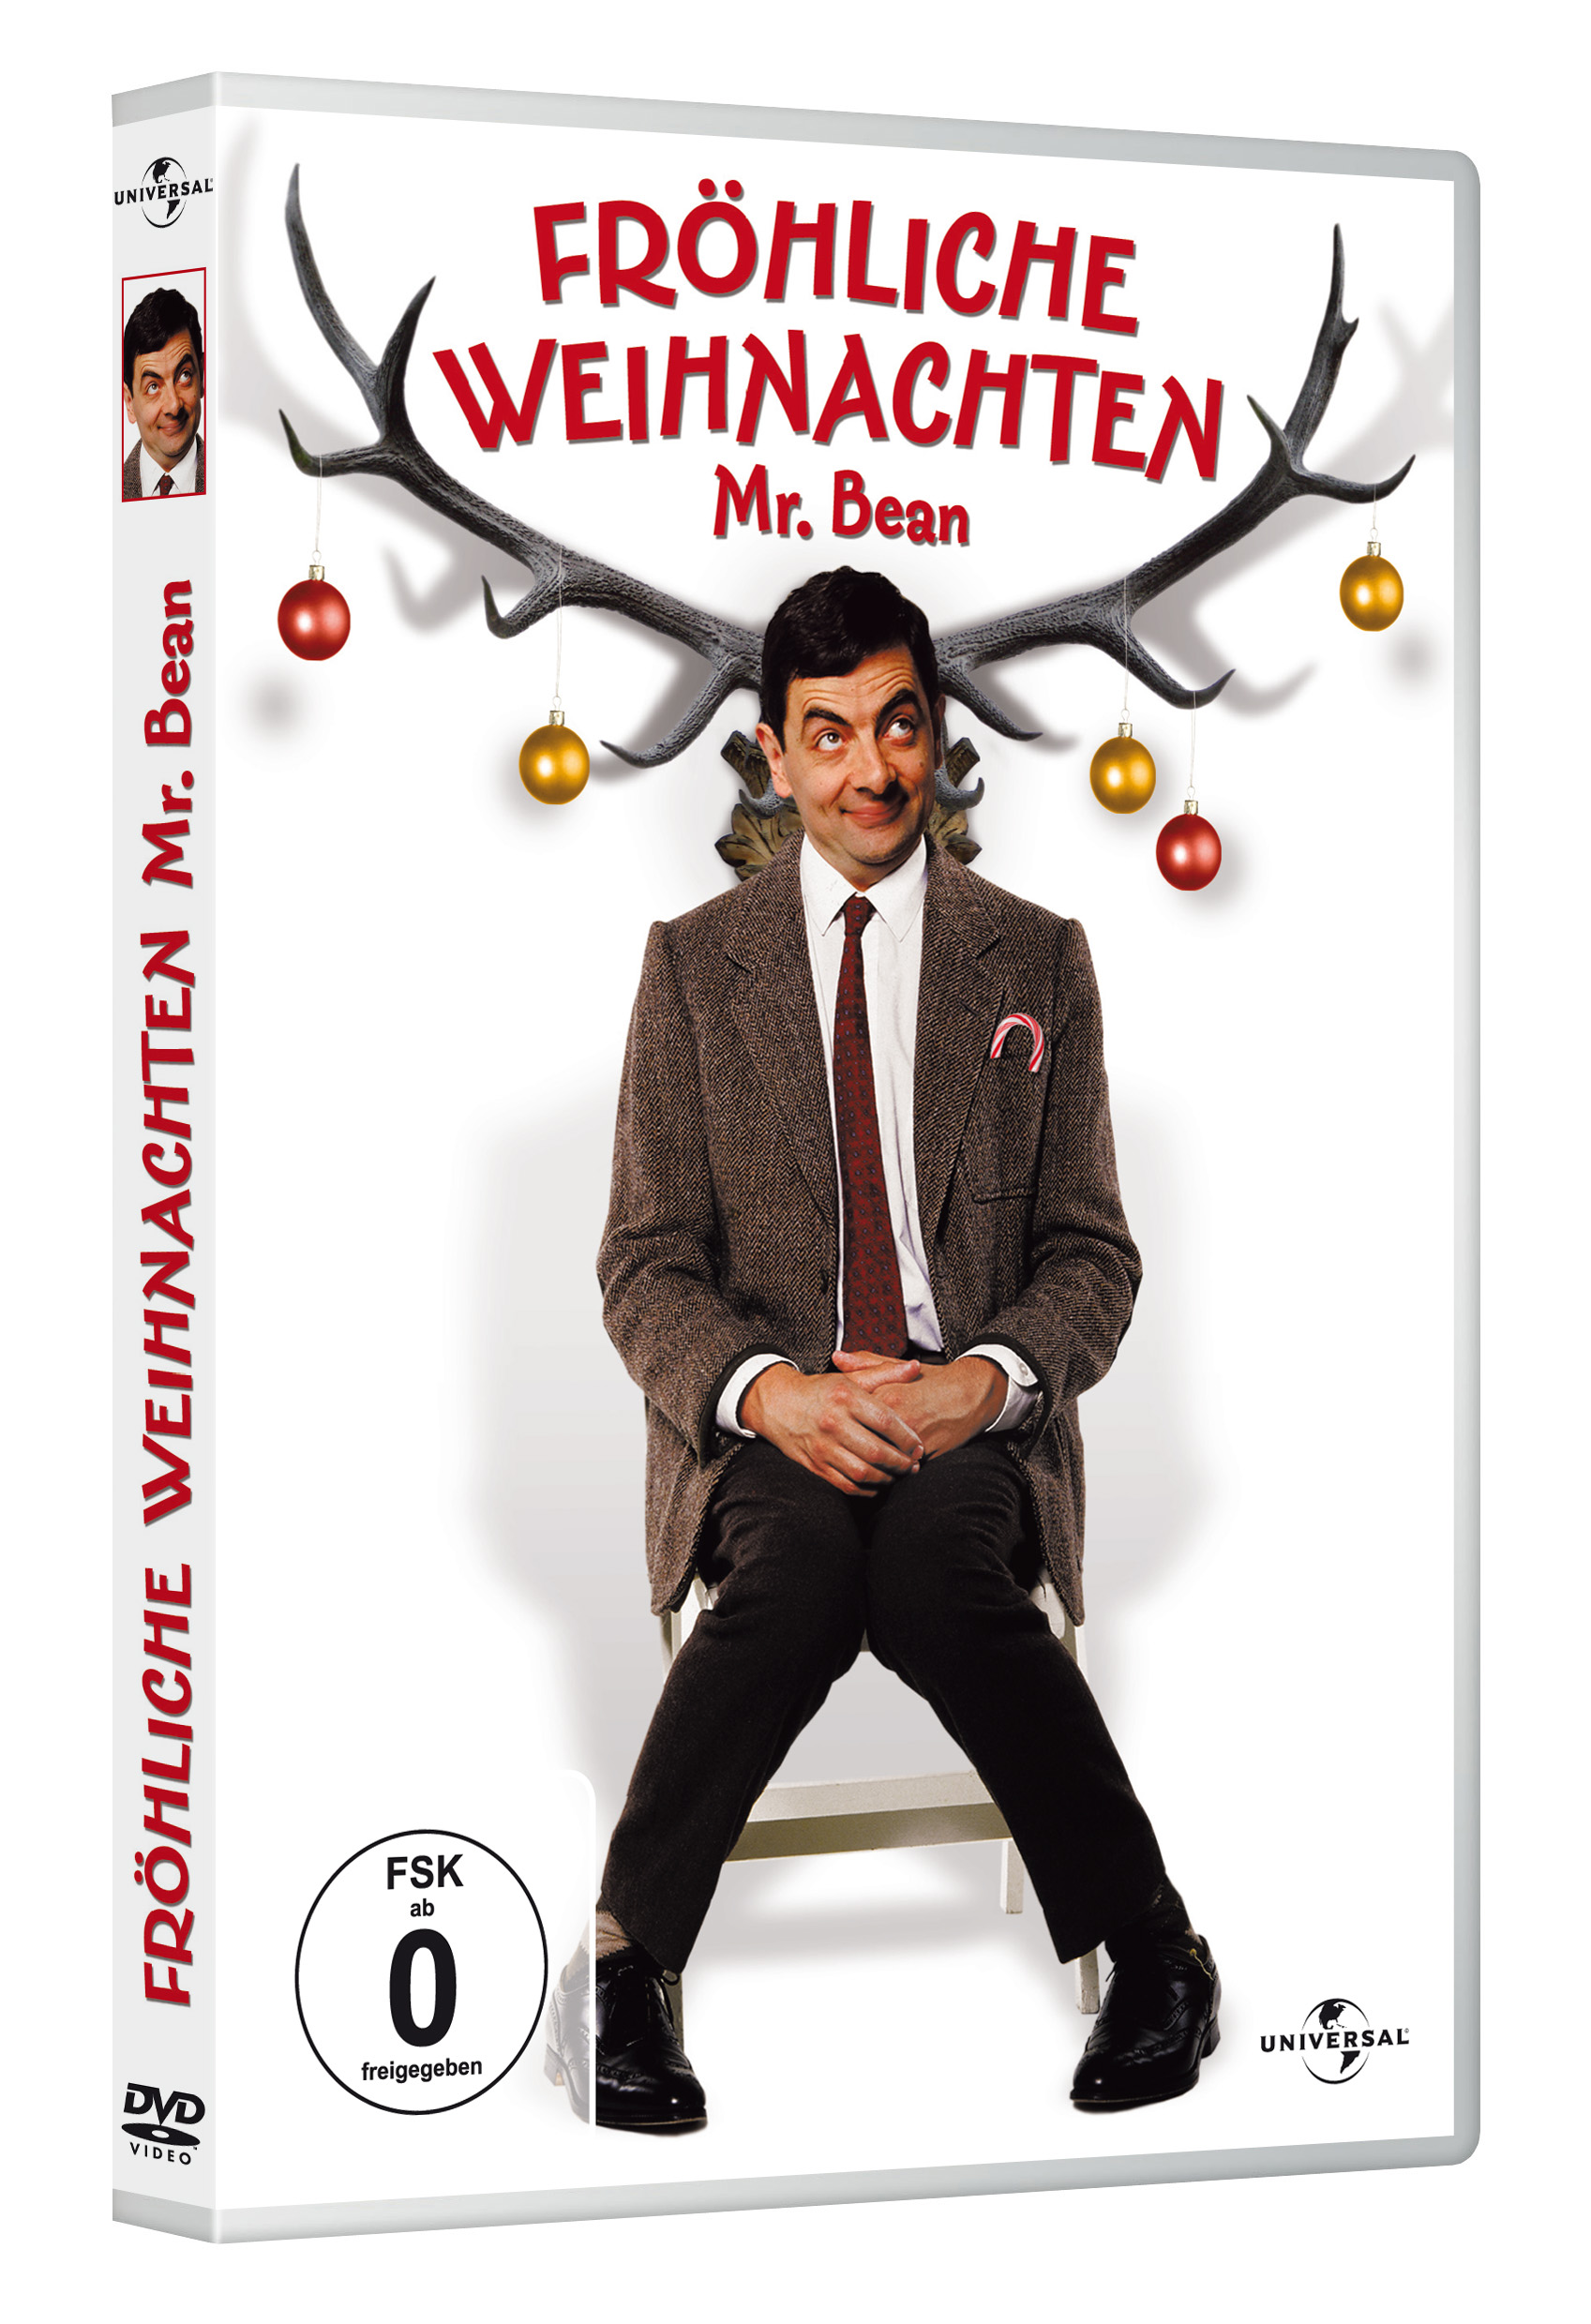 Fröhliche Weihnachten - Mr. DVD Bean